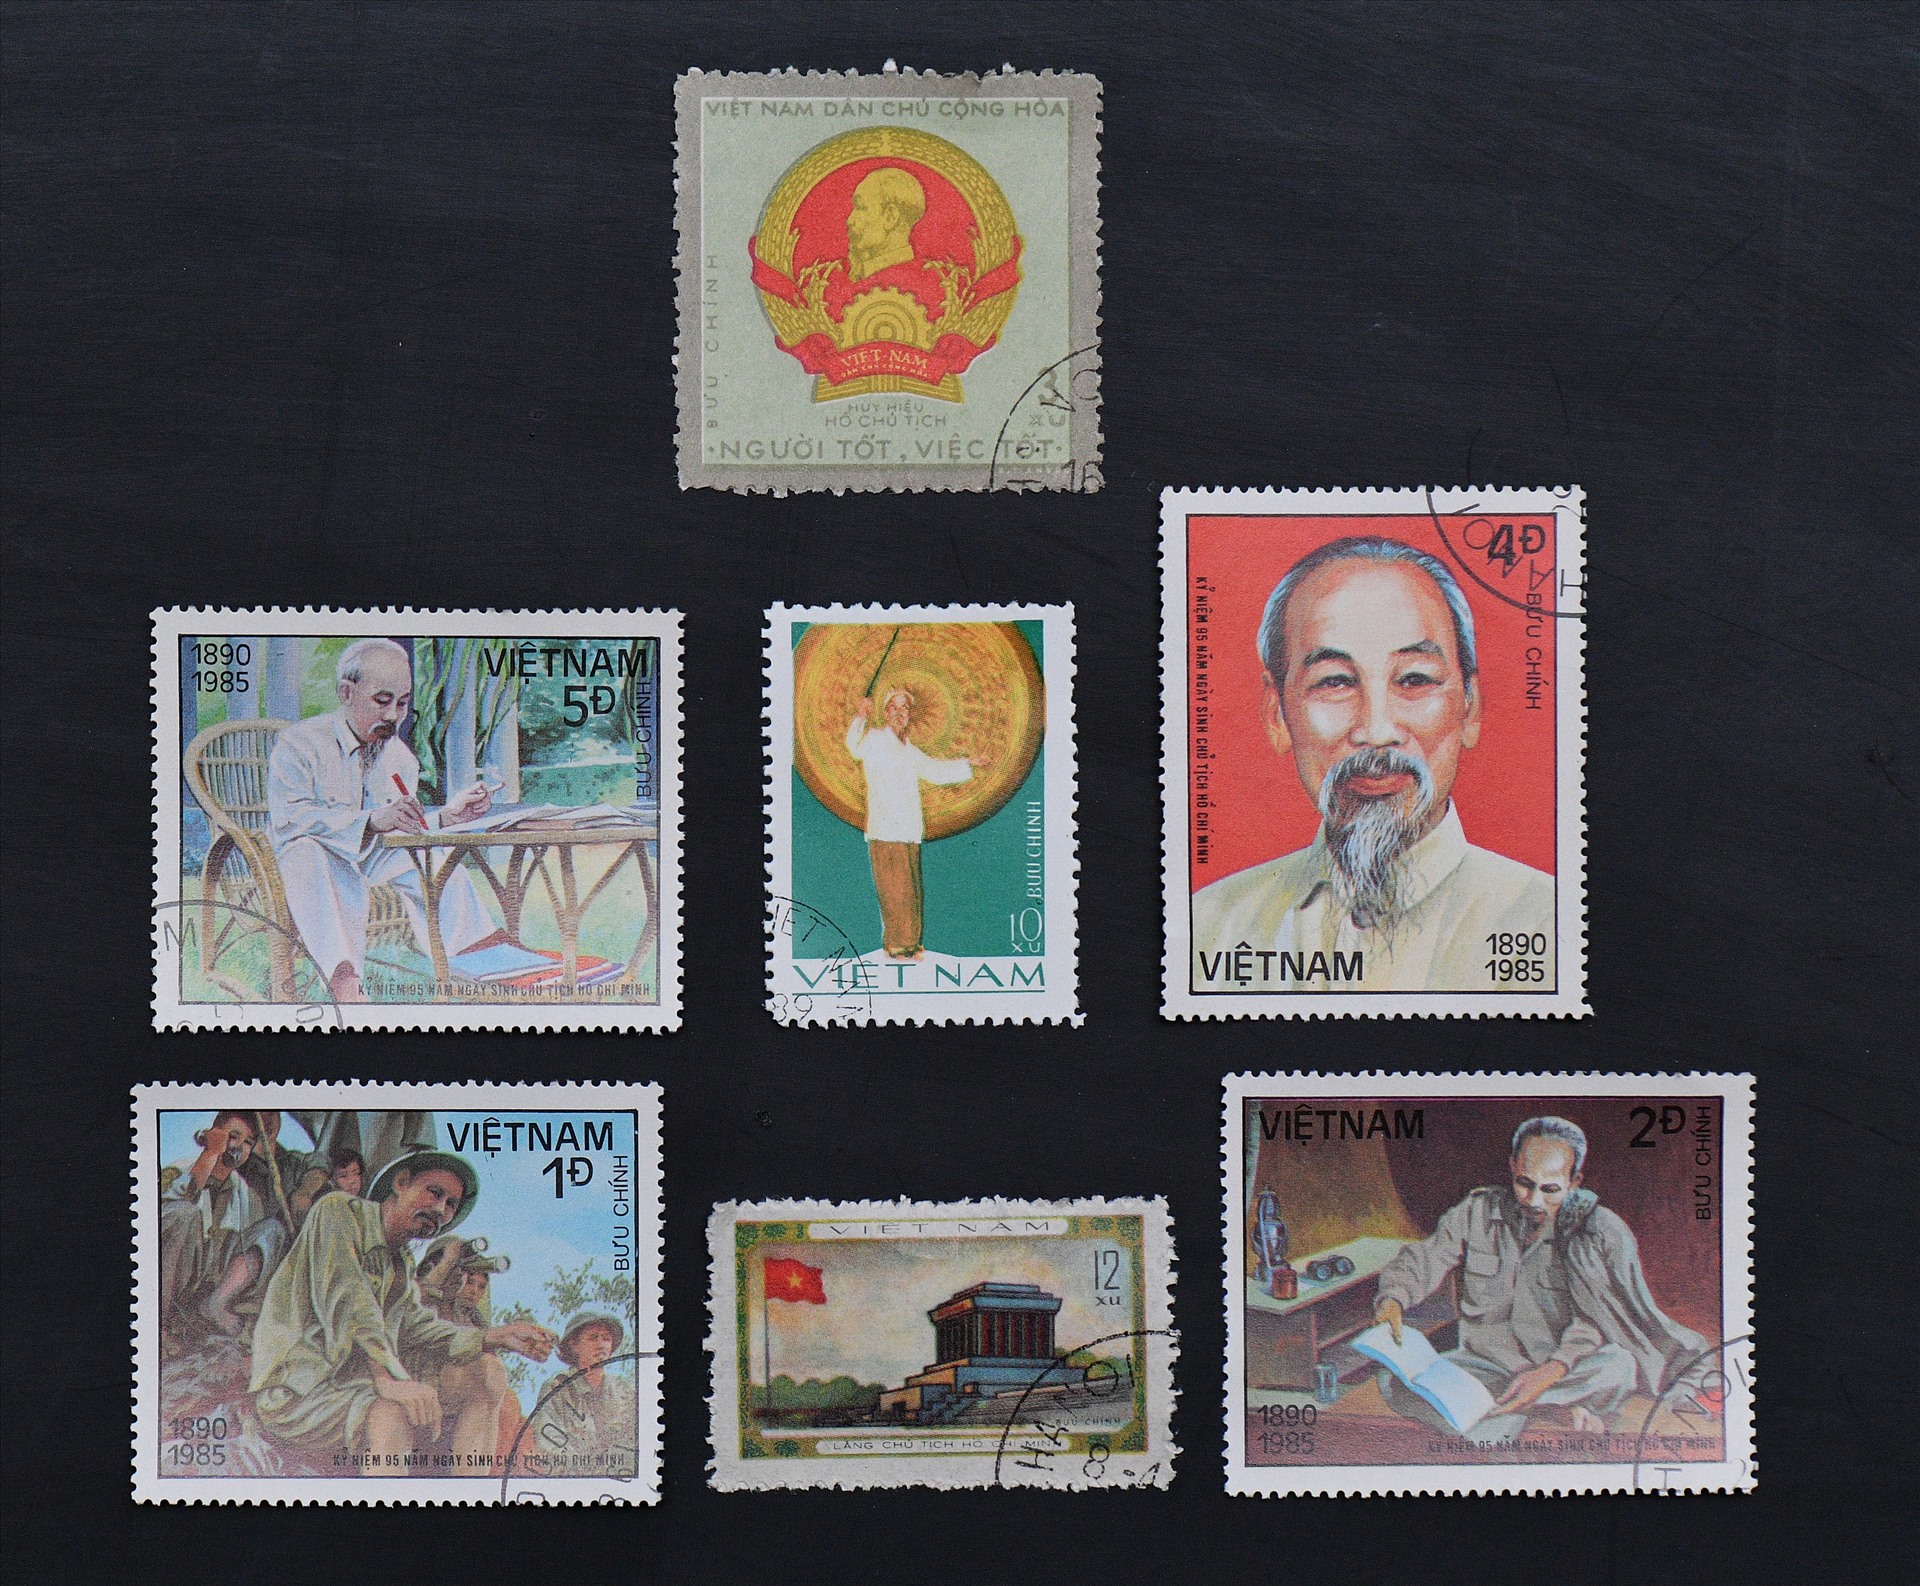 Hình ảnh Bác trong bộ tem bưu chính Việt Nam.